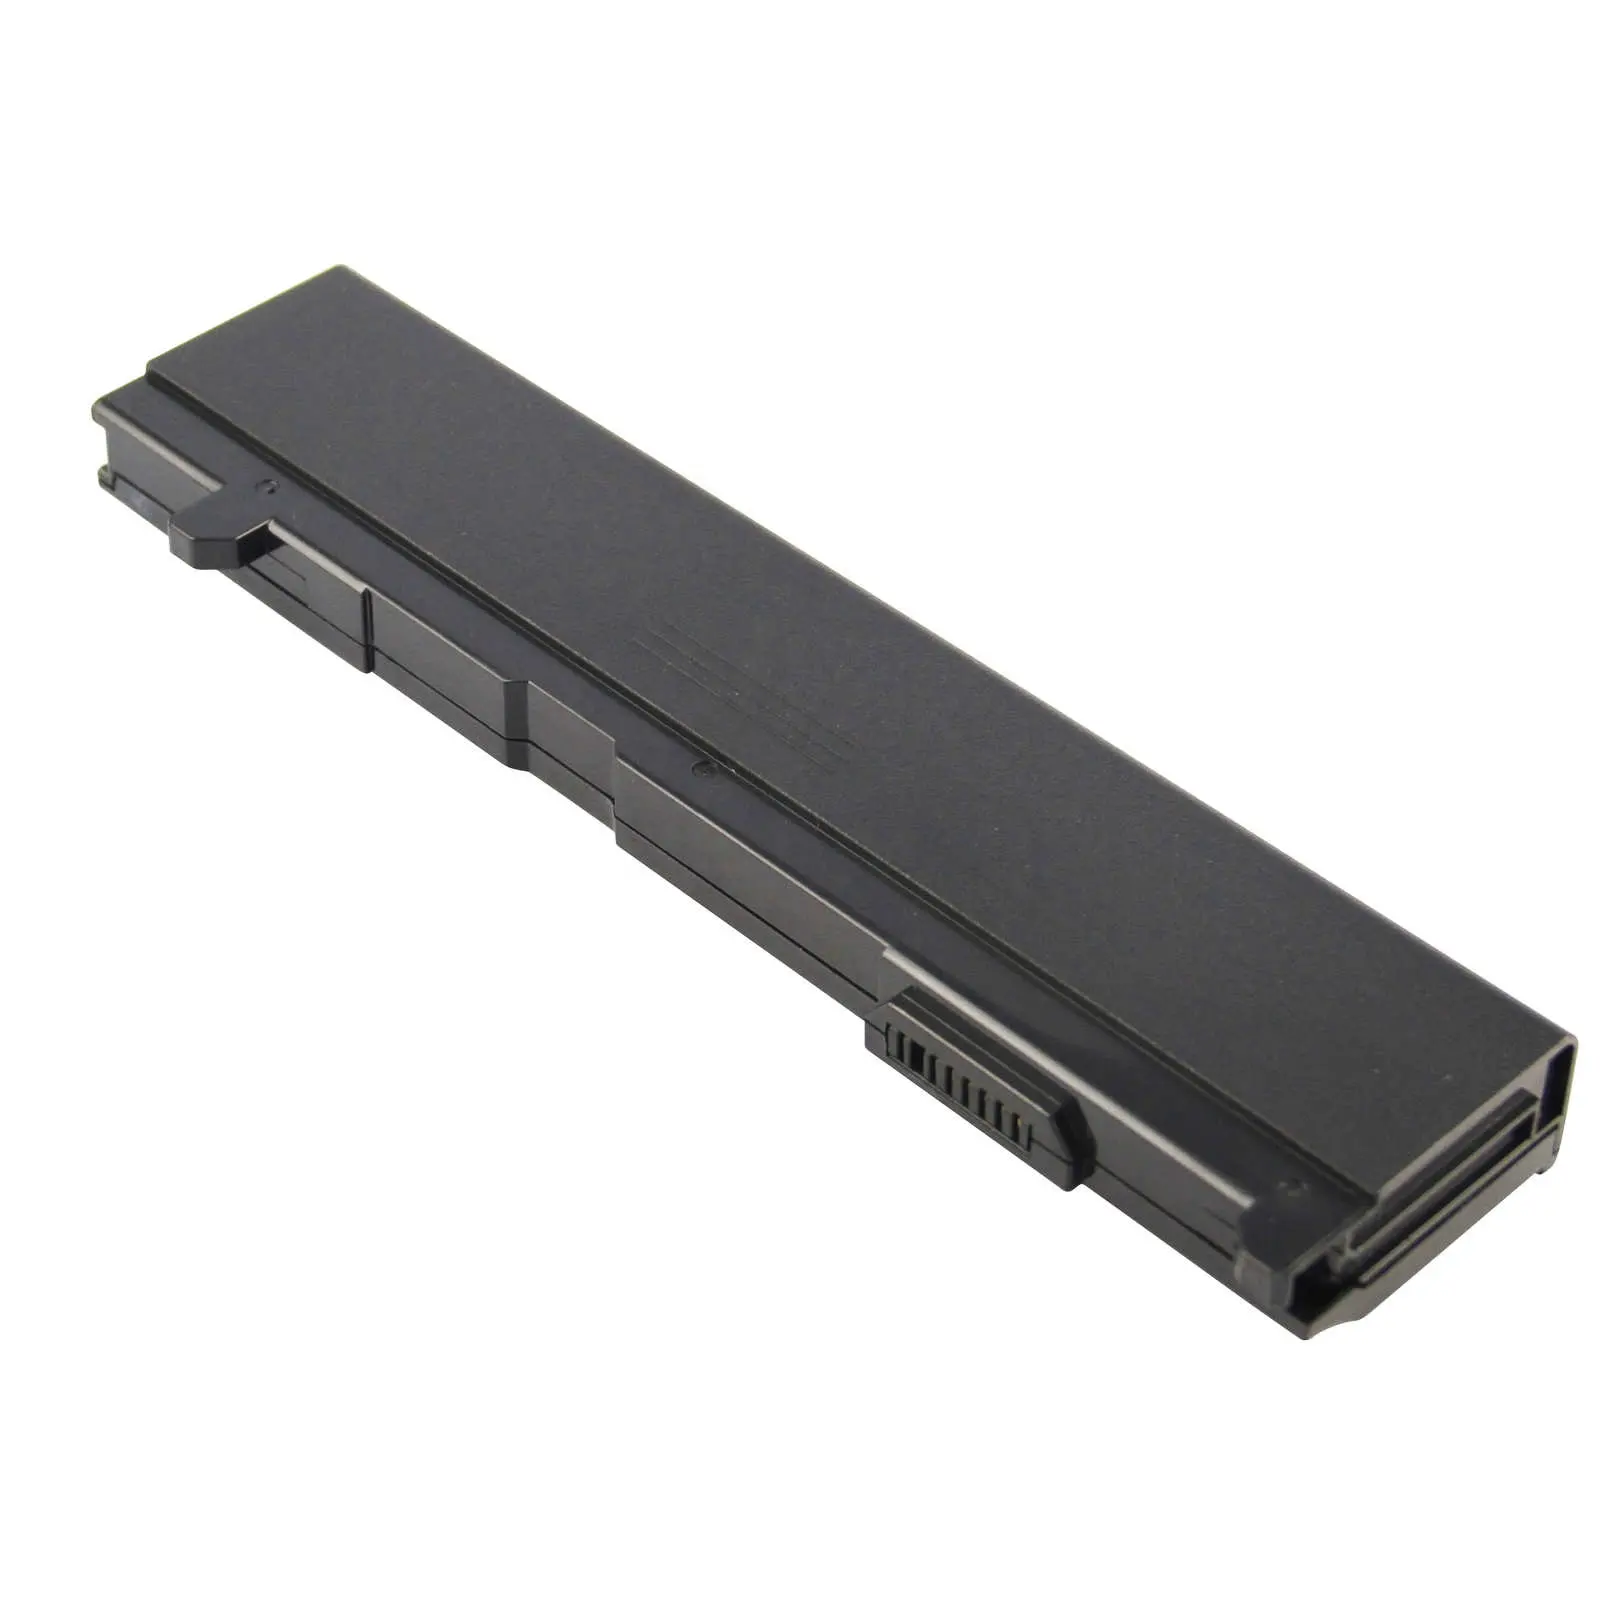 11.1V 5200mAh लैपटॉप तोशिबा के लिए रिचार्जेबल बैटरी A100 A105 A110 A135 M70 PA3465U-1BAS PA3465U-1BRS प्रतिस्थापन बैटरी